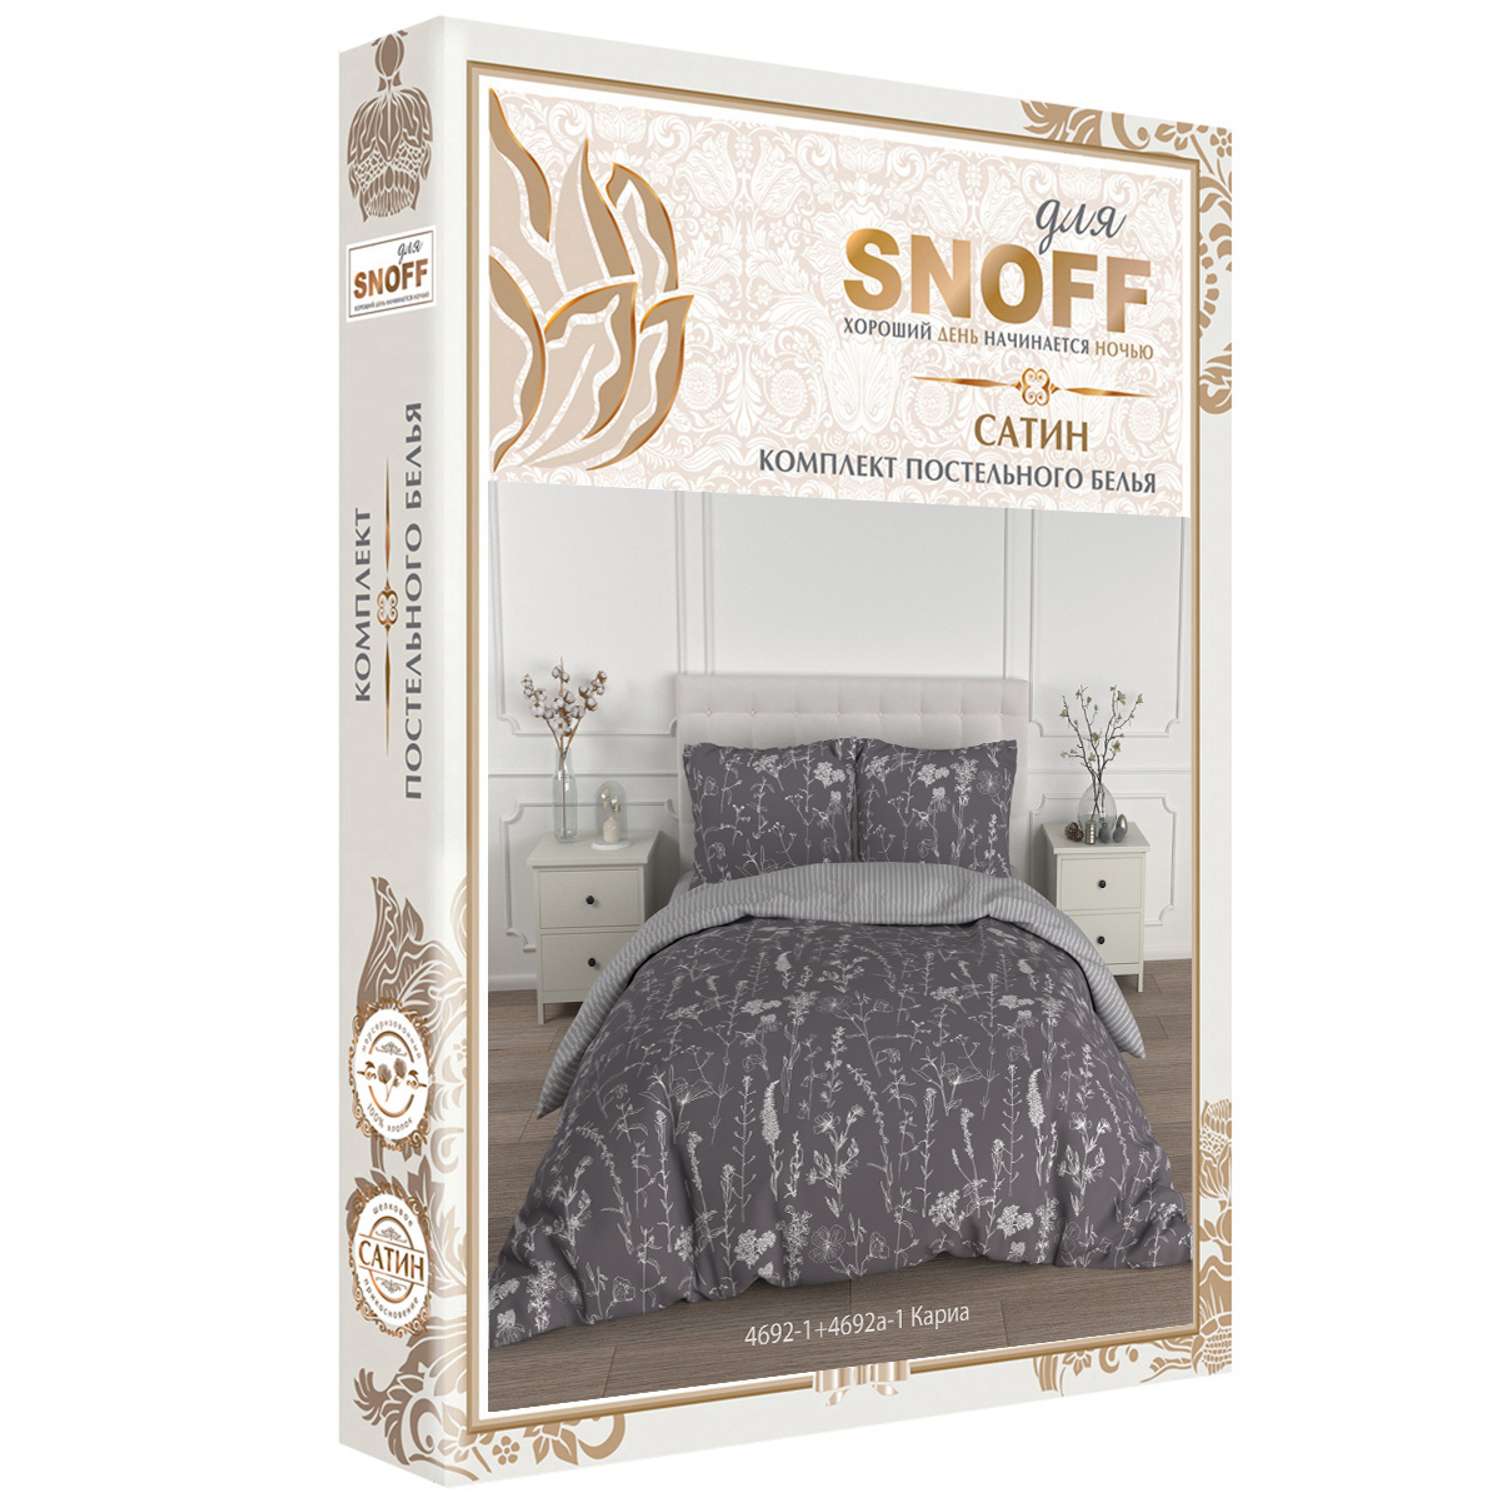 Комплект постельного белья для SNOFF Кариа 1.5-спальный сатин - фото 4